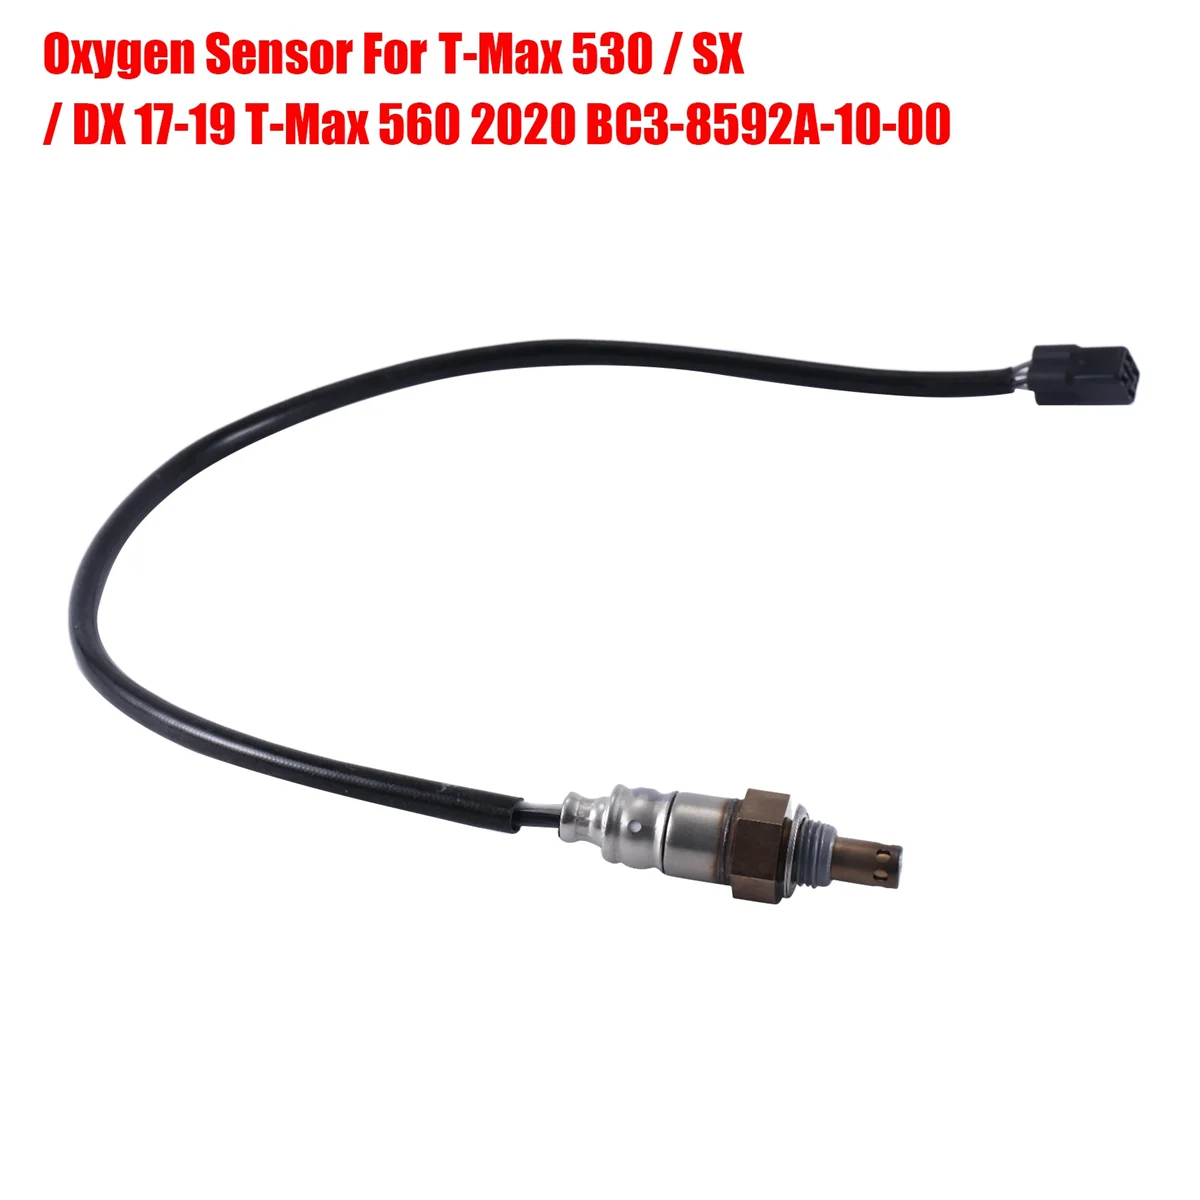 

Oxygen Sensor for Yamaha T-Max 530 / SX / DX 17-19 T-Max 560 2020 O2 Sensor BC3-8592A-10-00